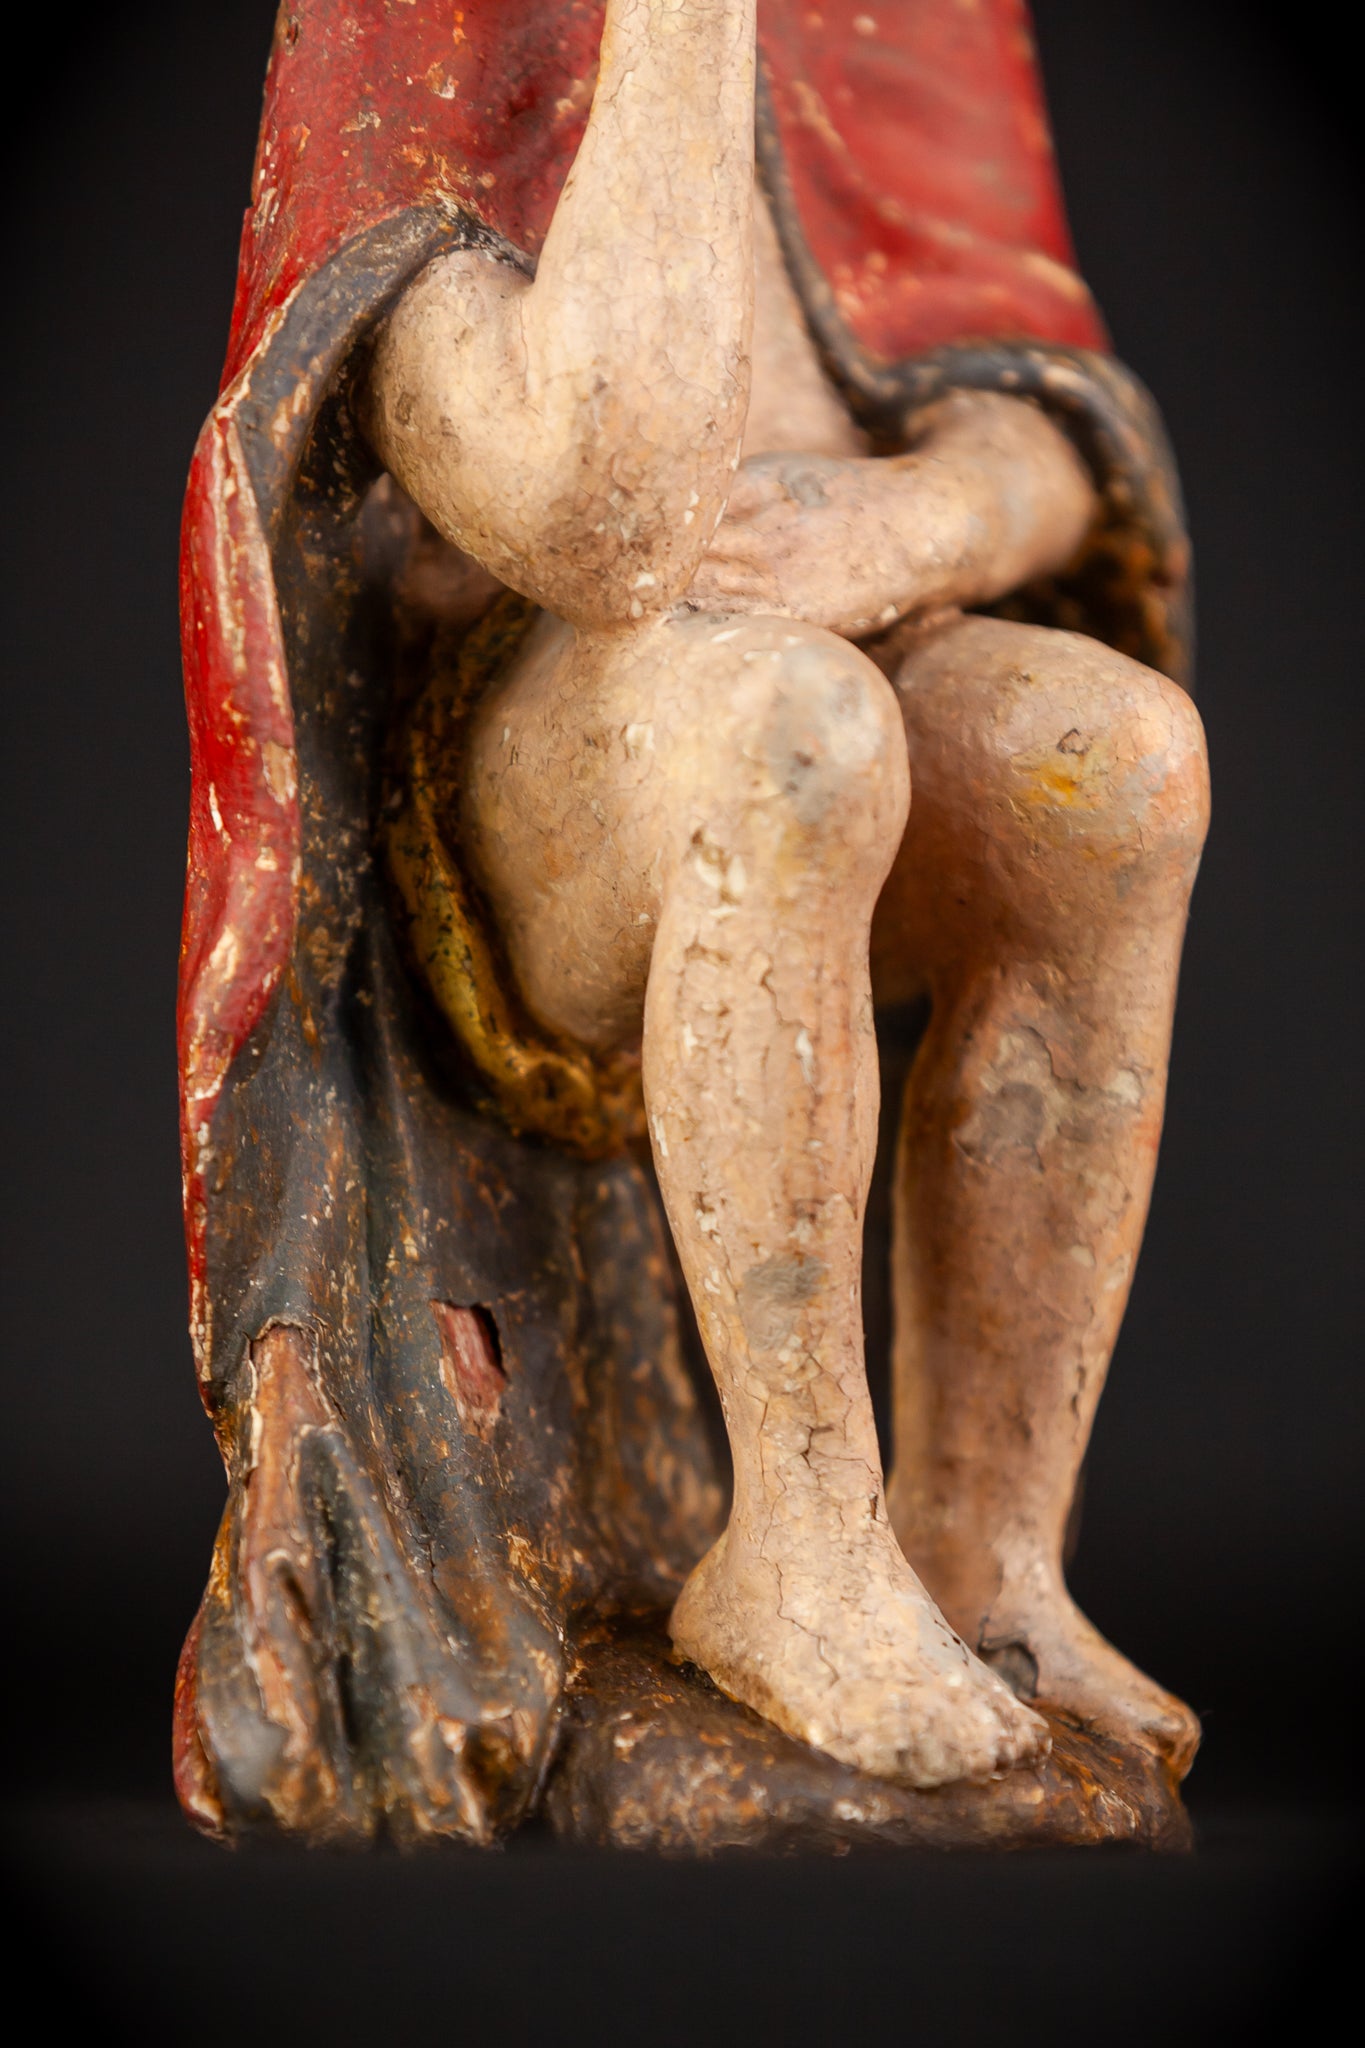 Pensive Christ Wooden Sculpture | 1700s Antique | 7.7" / 19.5 cm